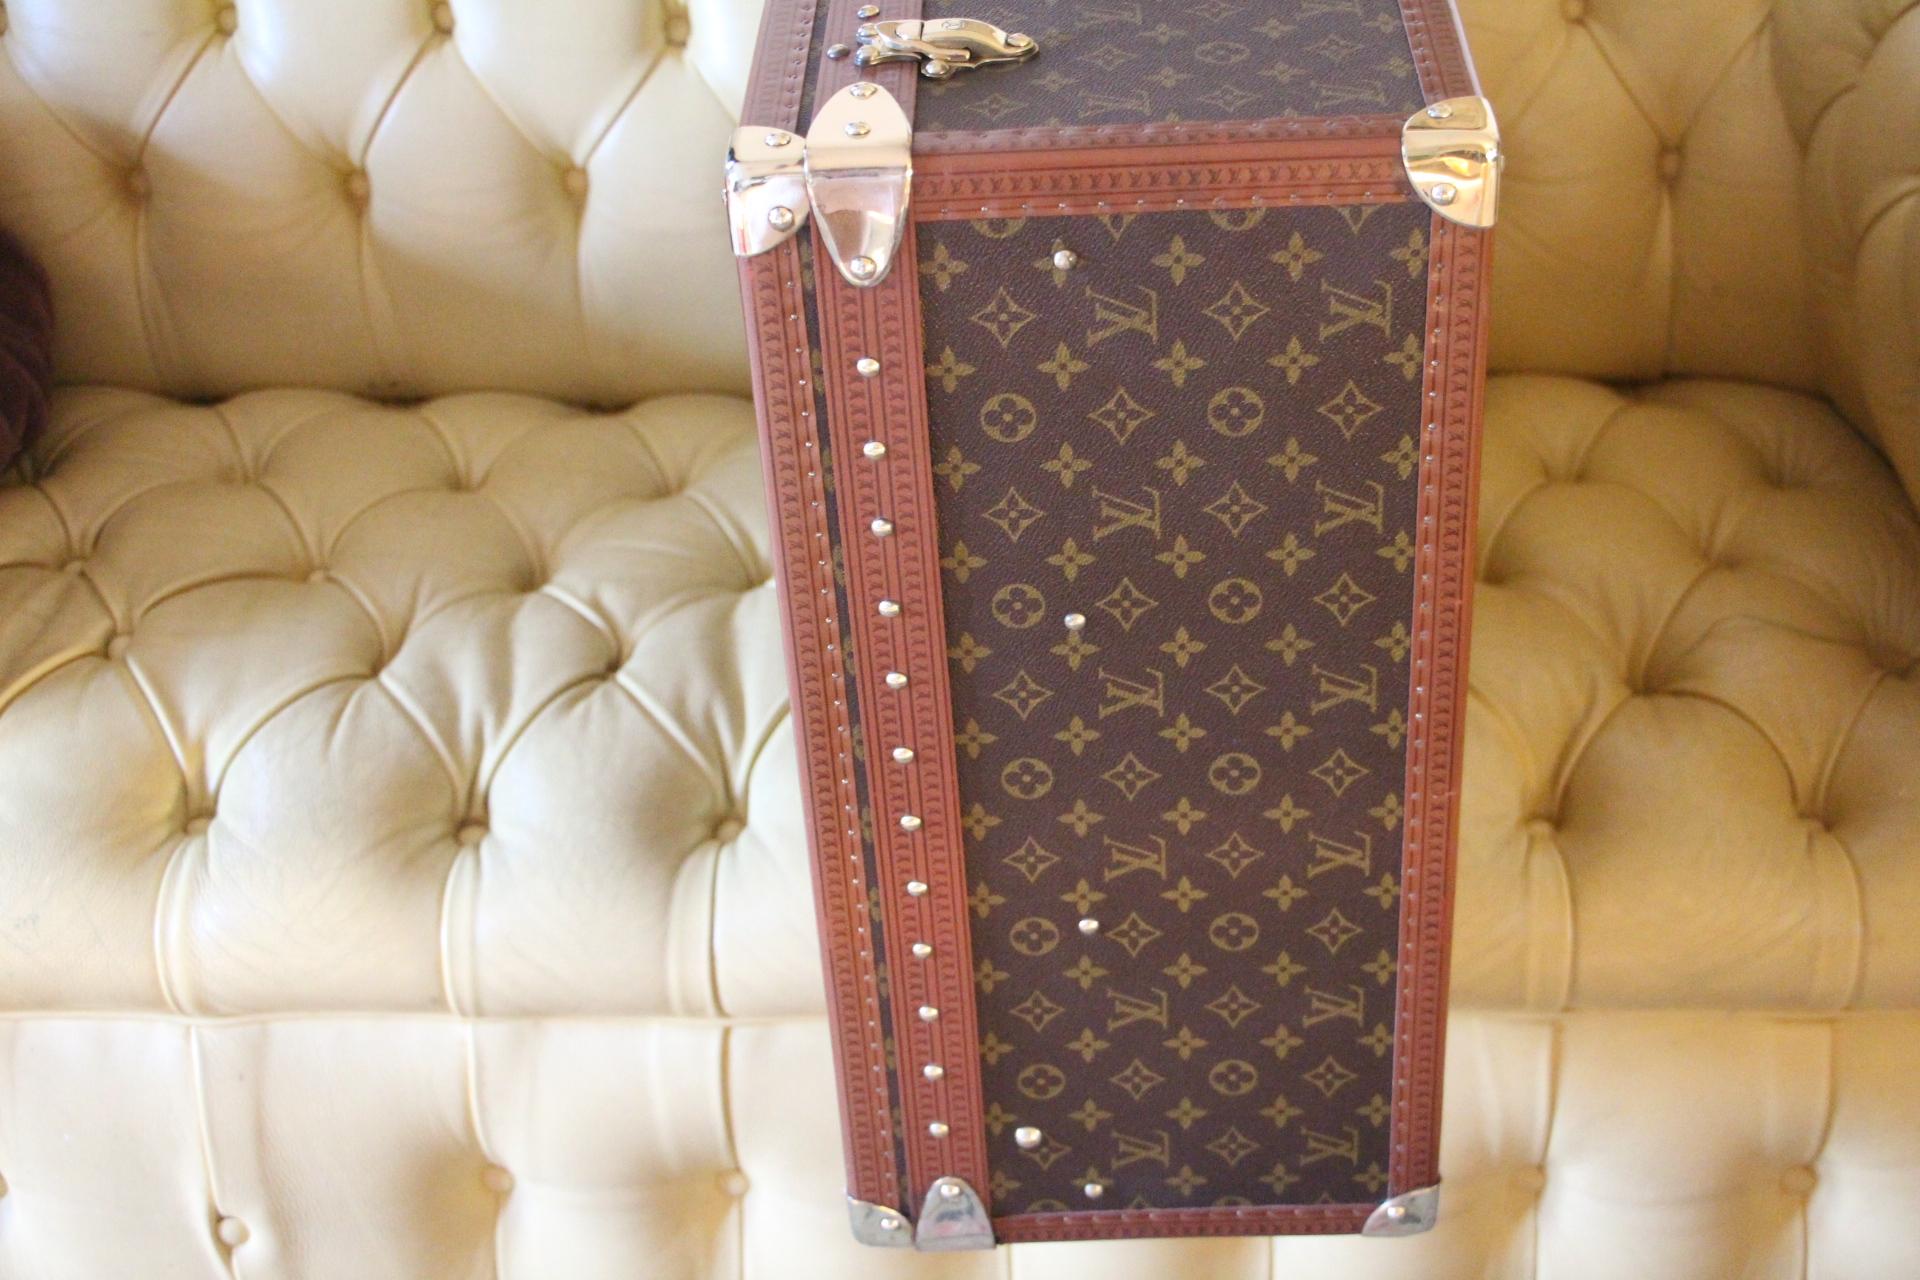  Louis Vuitton Suitcase, Alzer 80 Louis Vuitton Suitcase, Large Vuitton Suitcase 3